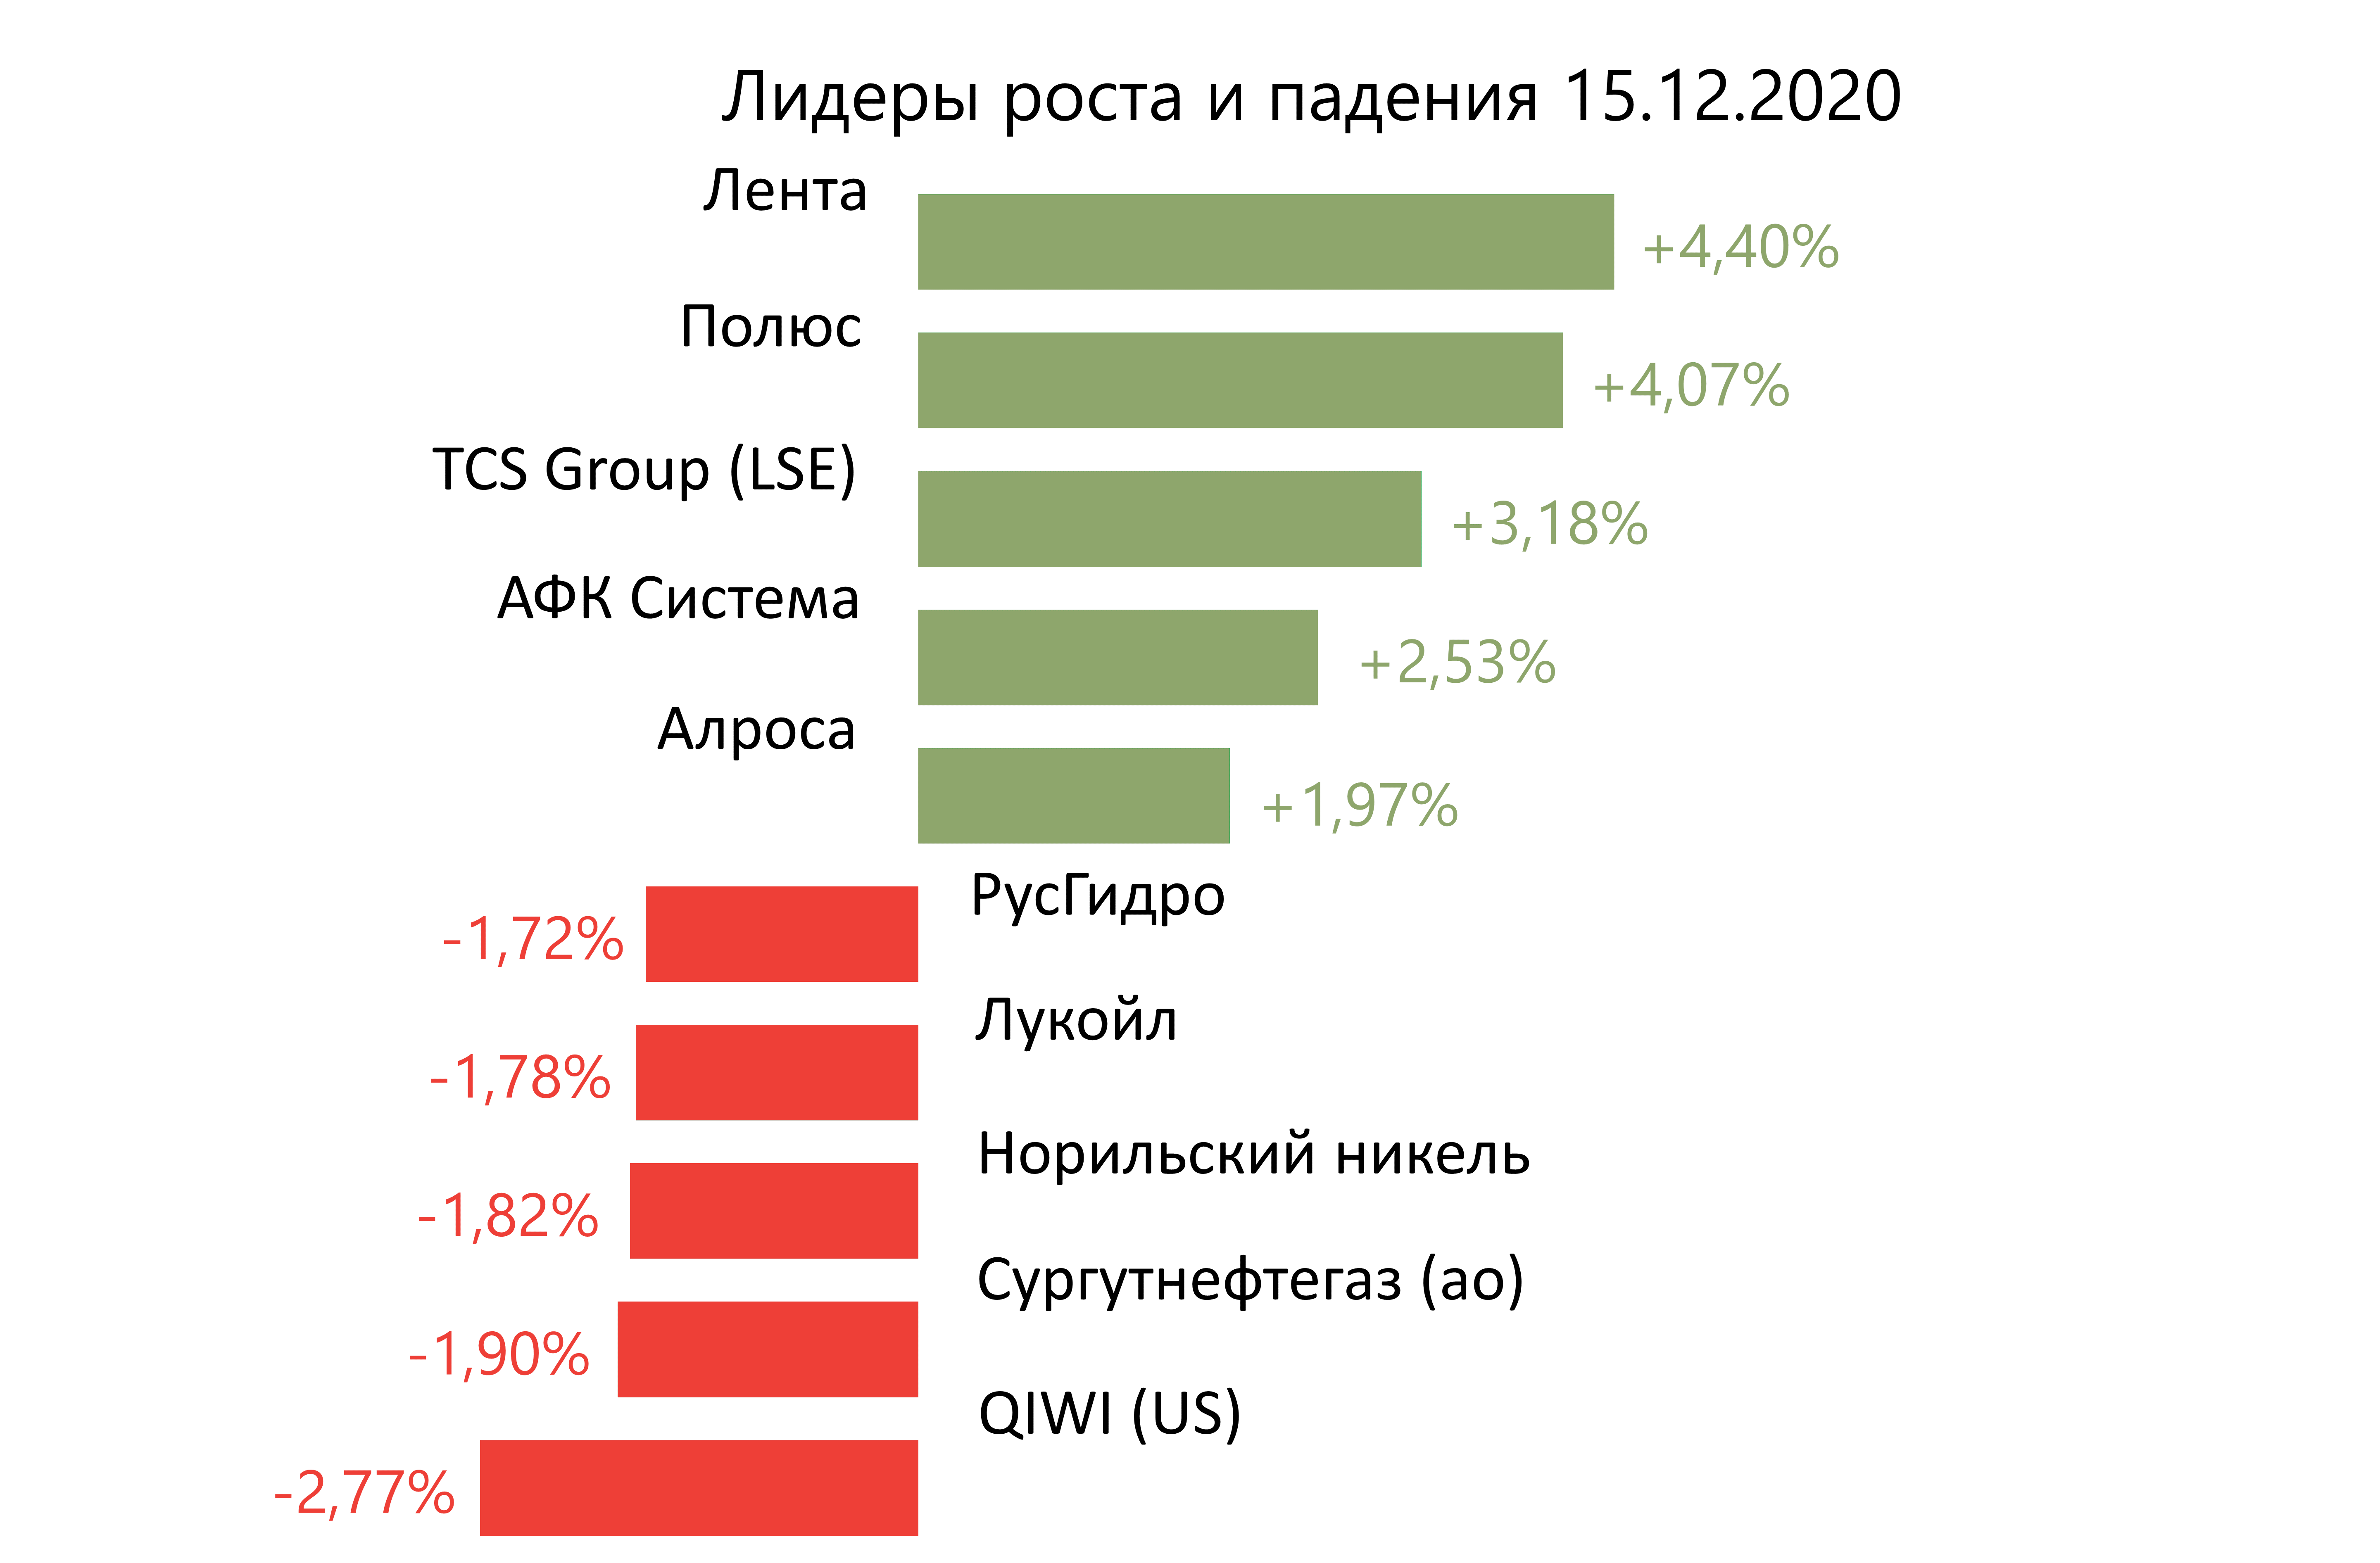 Лидеры роста и падения российского рынка на 15 декабря